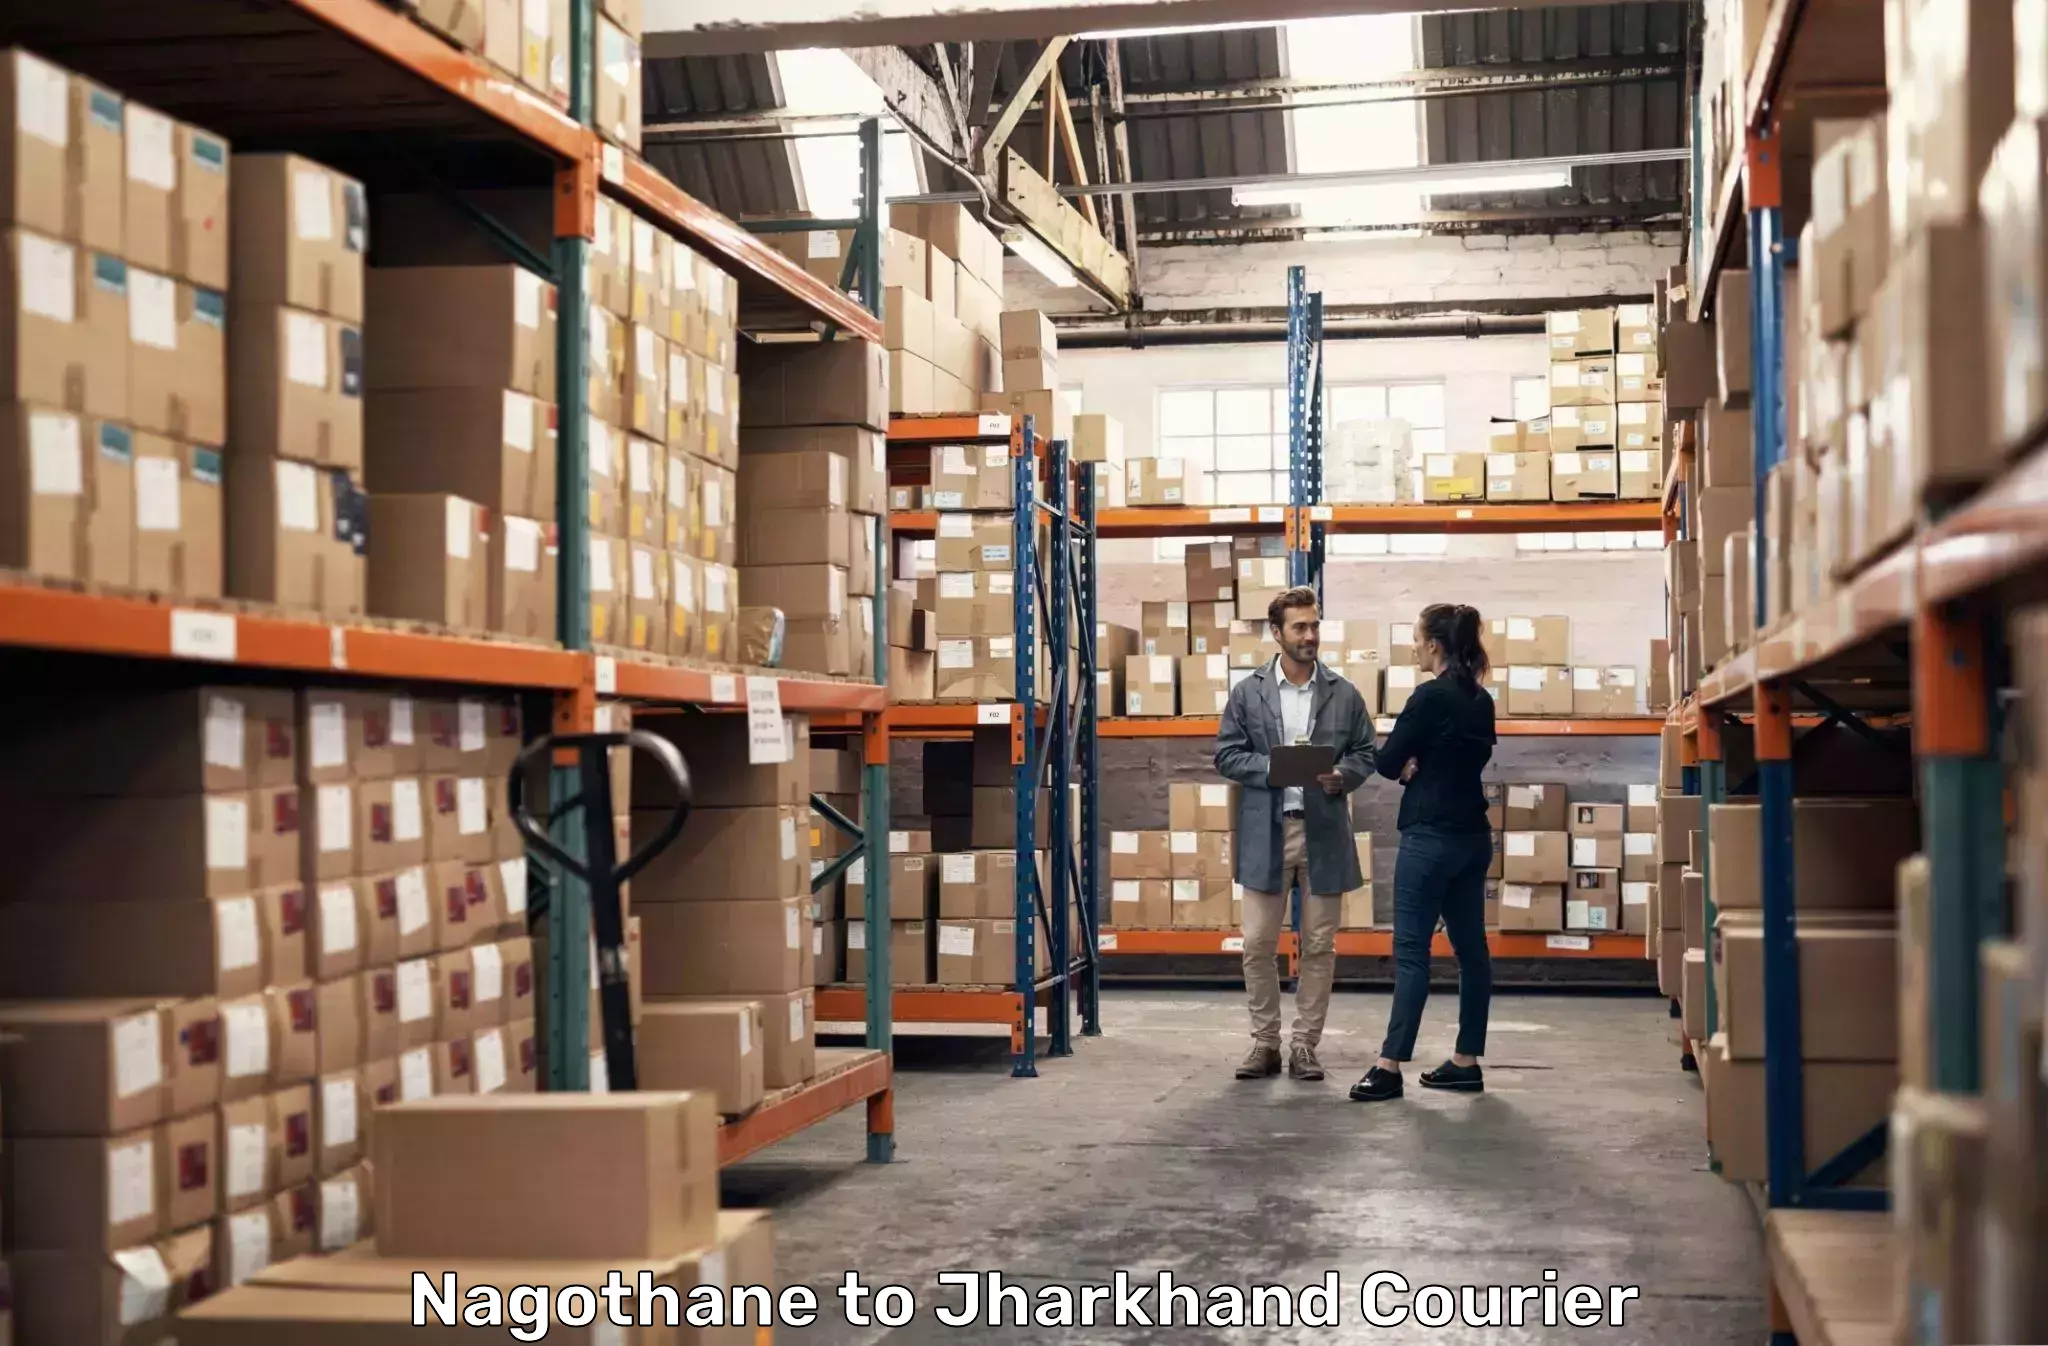 Global logistics network Nagothane to Torpa